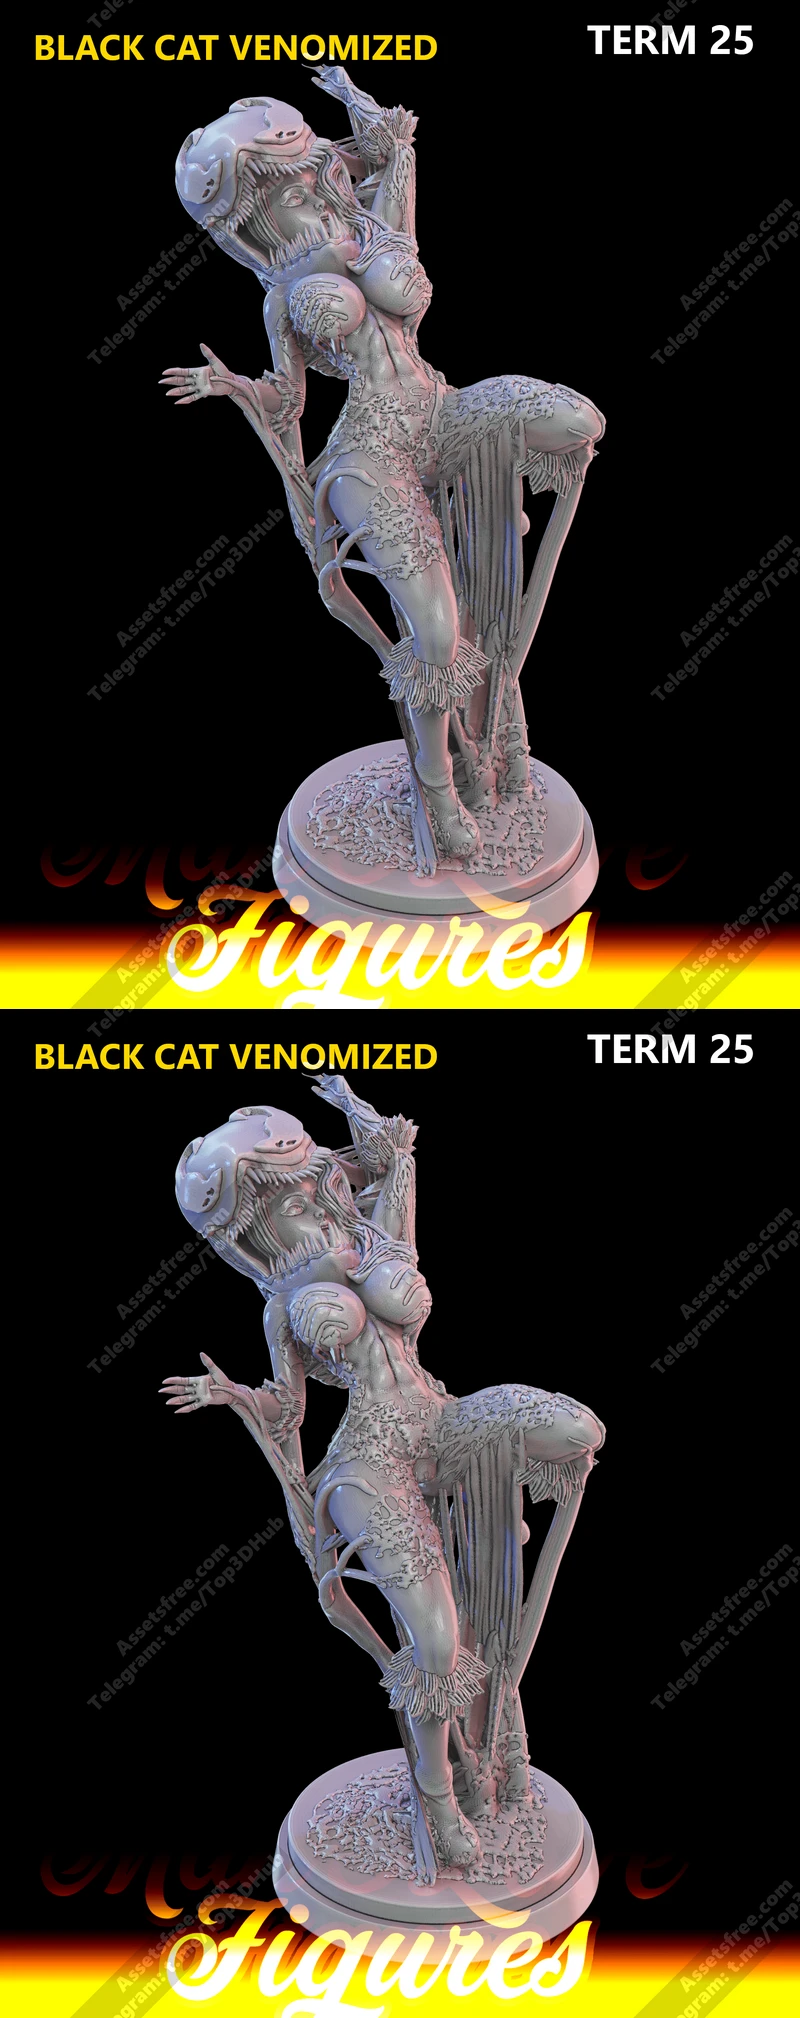 BLACK CAT - VENOMIZED